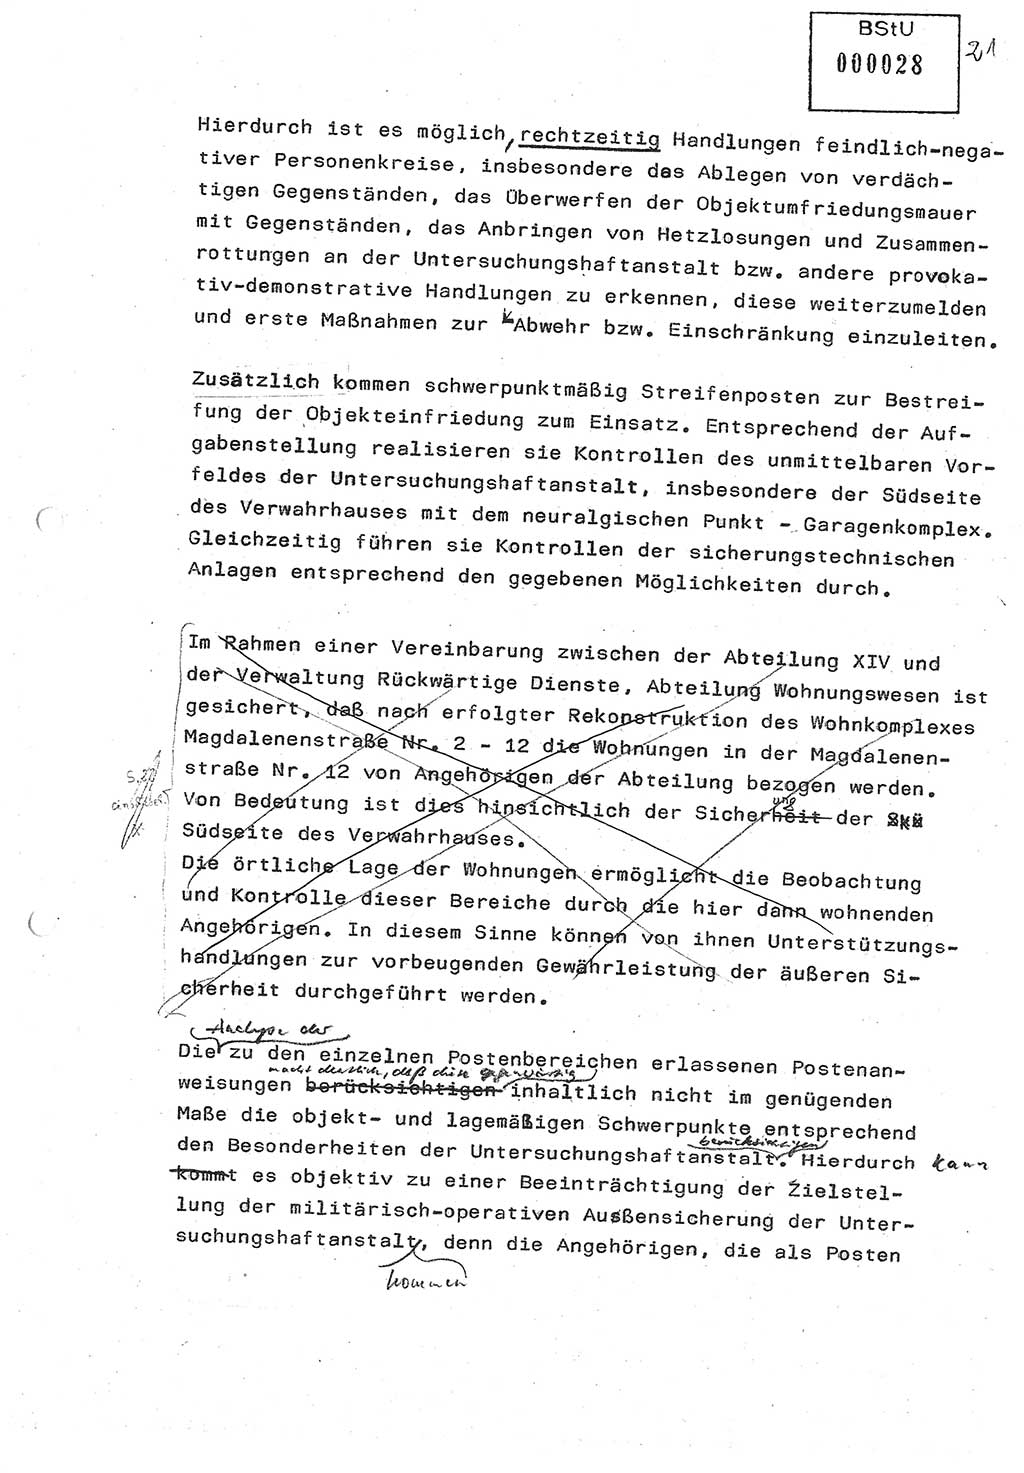 Diplomarbeit (Entwurf) Oberleutnant Peter Parke (Abt. ⅩⅣ), Ministerium für Staatssicherheit (MfS) [Deutsche Demokratische Republik (DDR)], Juristische Hochschule (JHS), Geheime Verschlußsache (GVS) o001-98/86, Potsdam 1986, Seite 28 (Dipl.-Arb. MfS DDR JHS GVS o001-98/86 1986, S. 28)